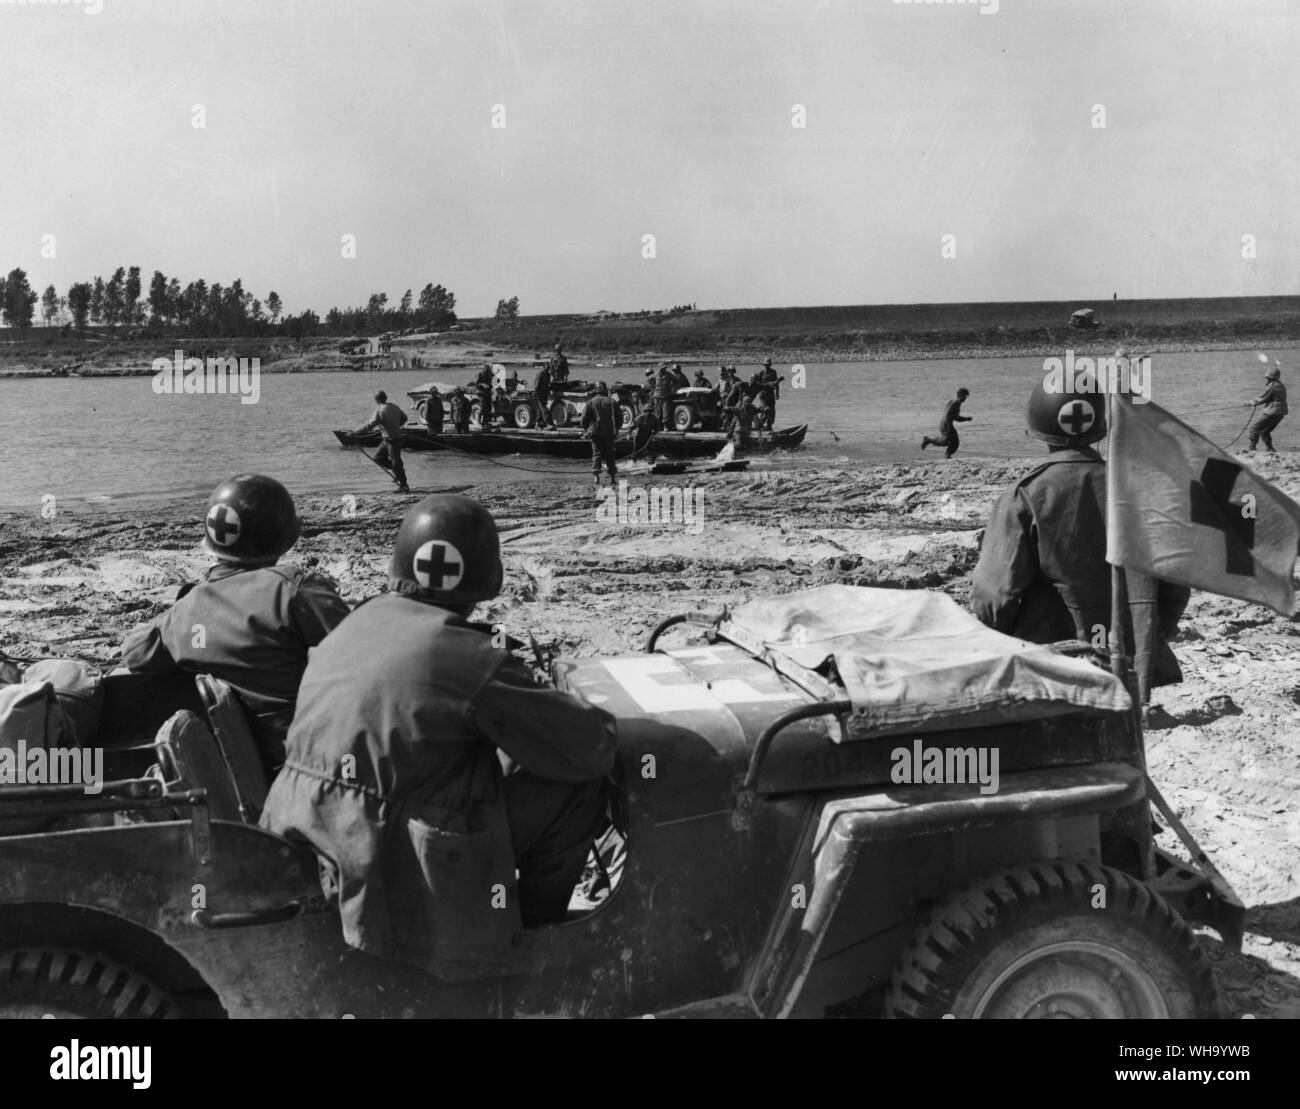 WW2: Po, Italien. Annäherung an der Nordseite des Flusses Po mit Fahrzeugen und Personal Das Landing Craft rasch von den Männern am Ufer behandelt werden und die Ärzte sind im Fall von Unfällen. Fünfte Armee. April 1945. Stockfoto